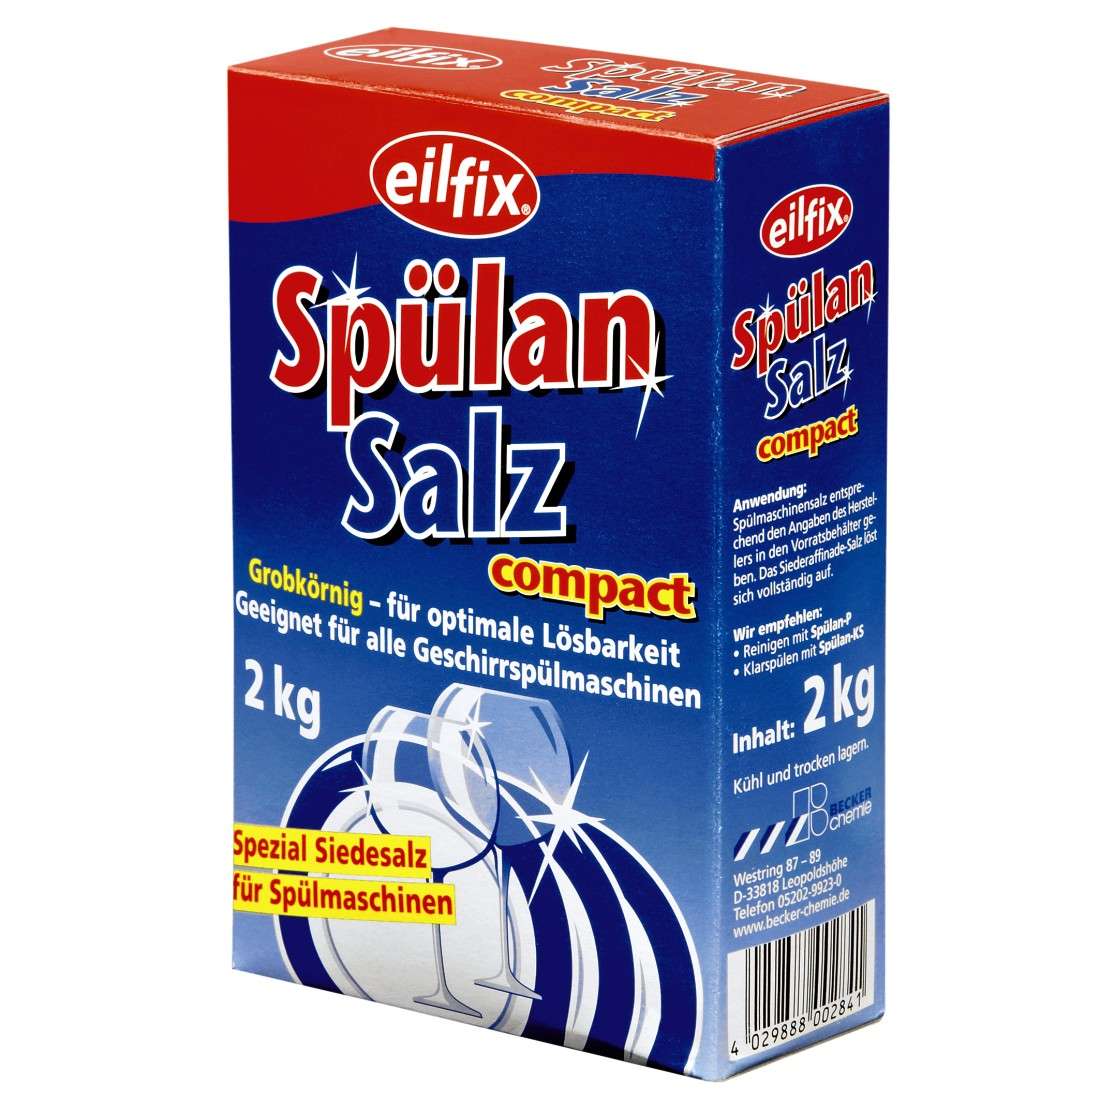 EILFIX® SPÜLAN Spülan Salz compact